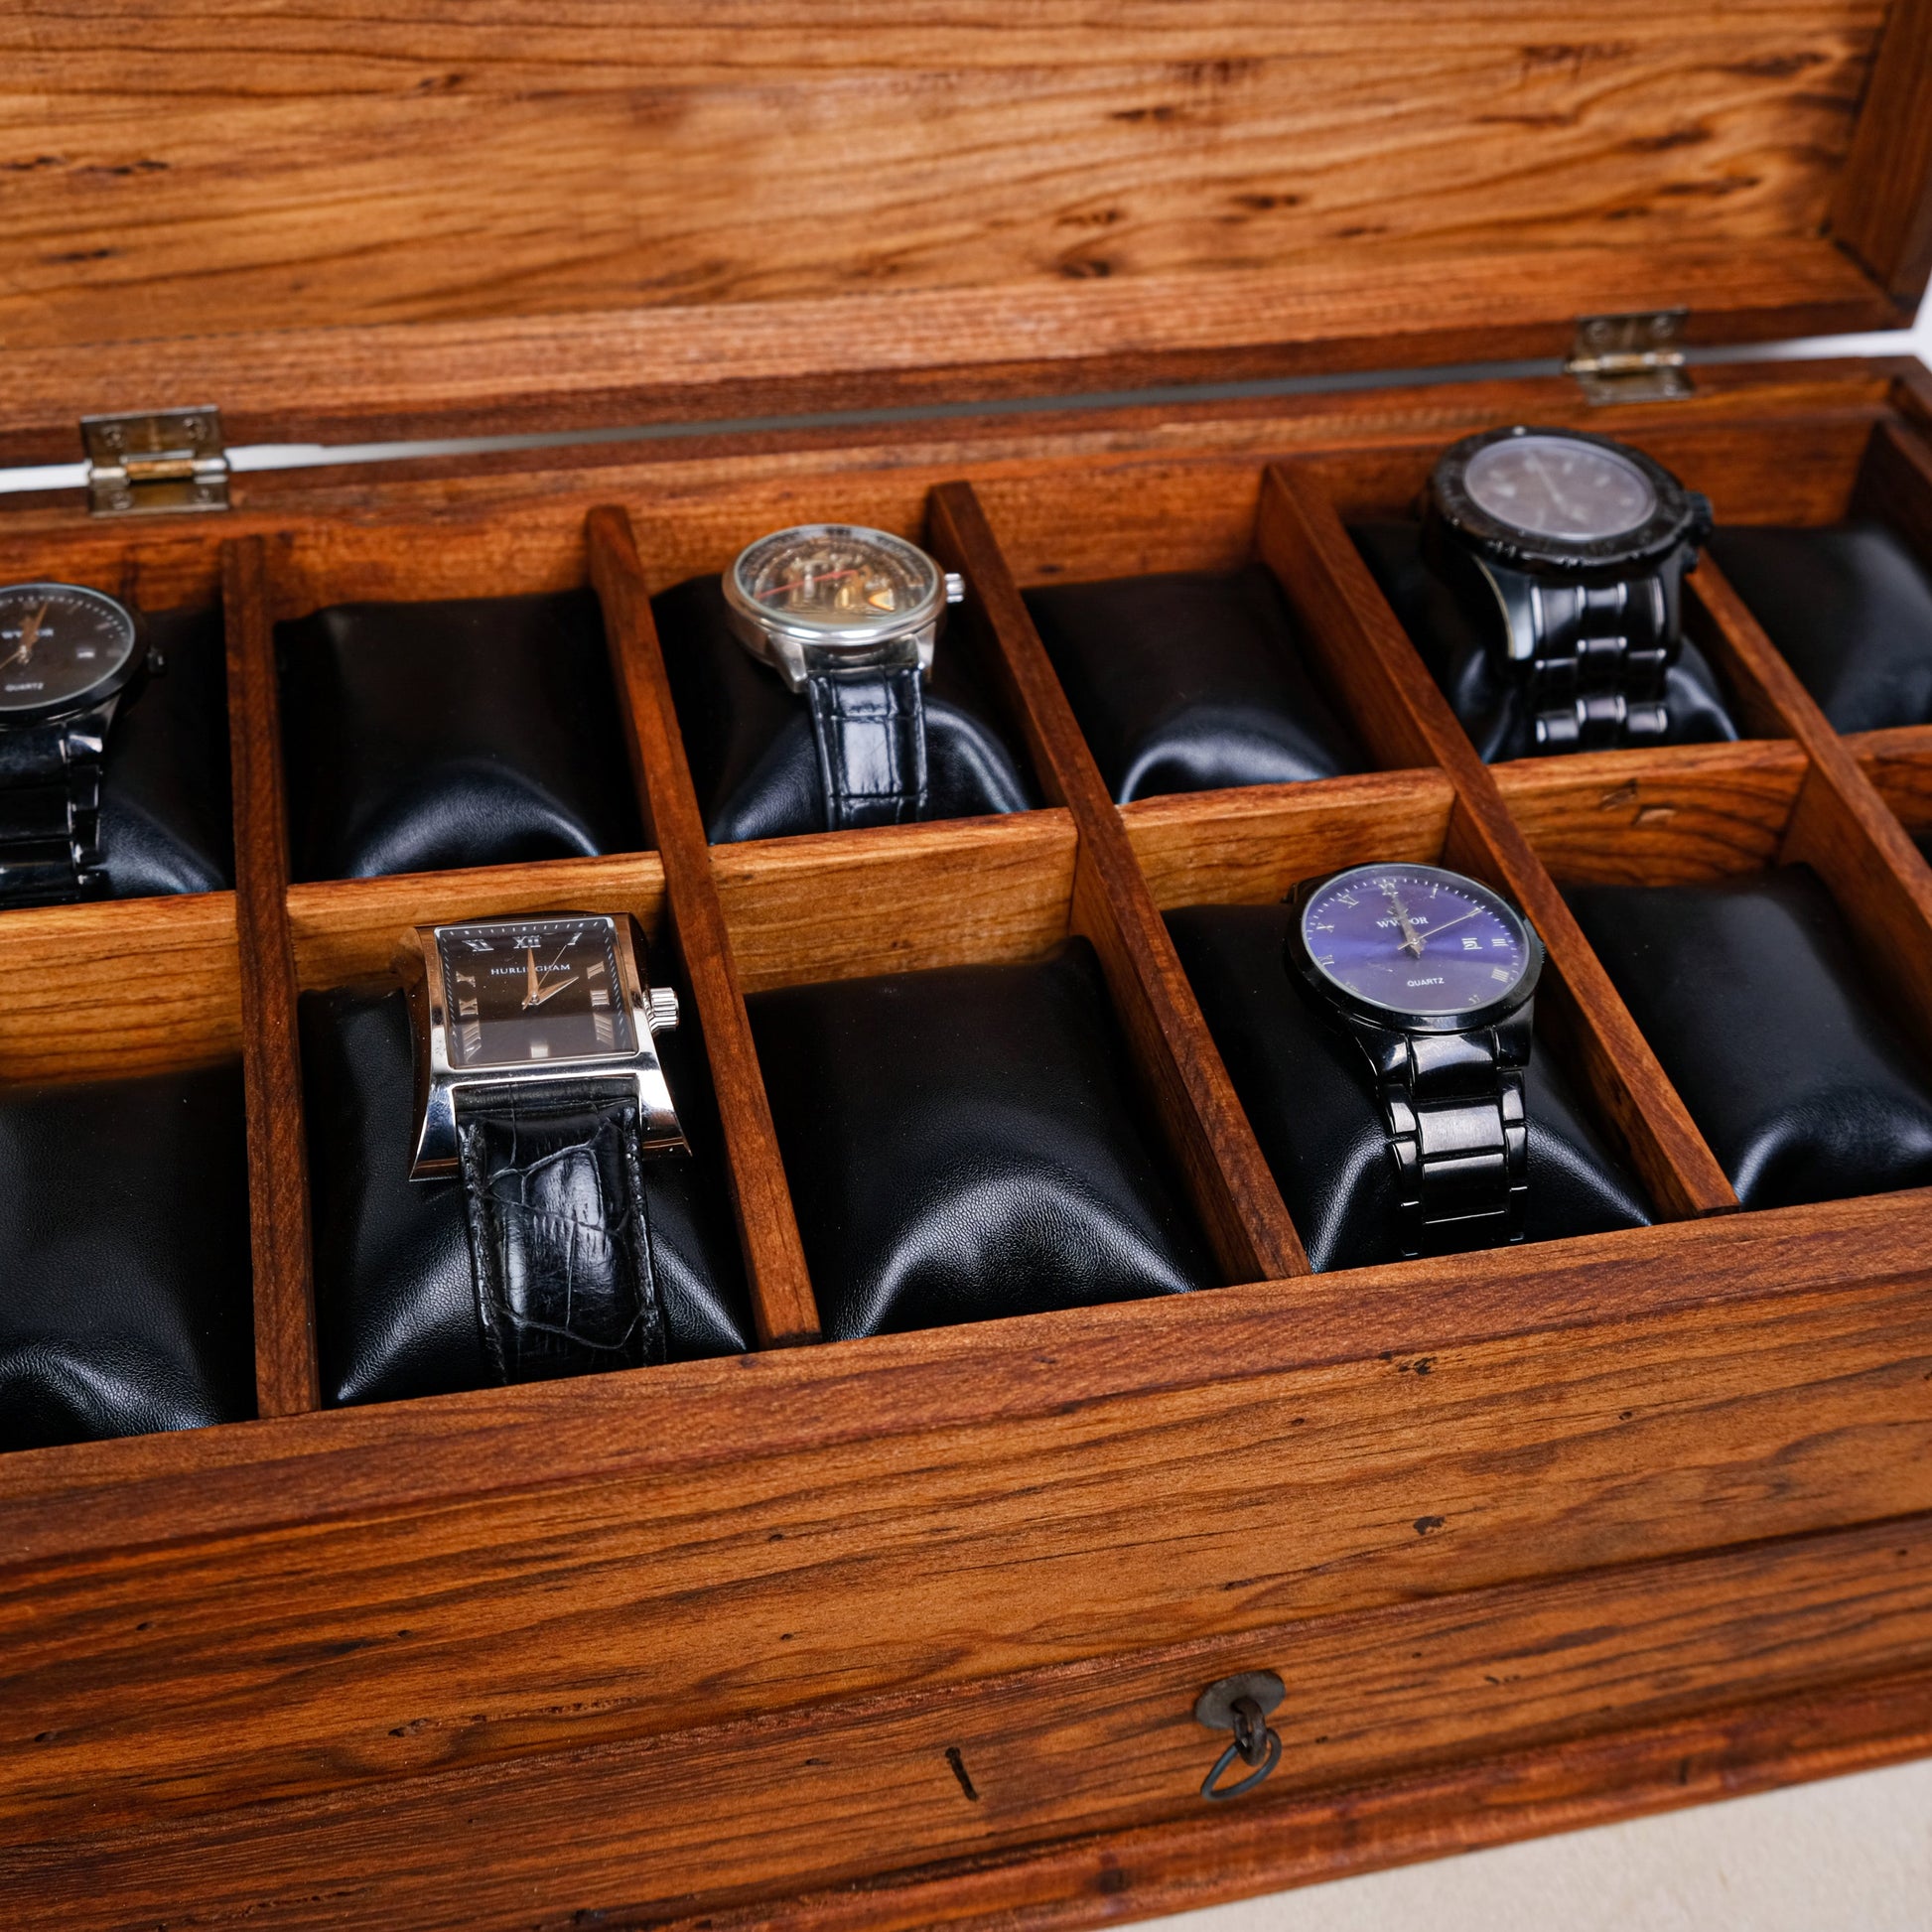 Personalized Watch Box - Holds 10 Watches, Watch Case, Watch Organizer,  Watch Storage, Engraved, Monogram, Custom Designs